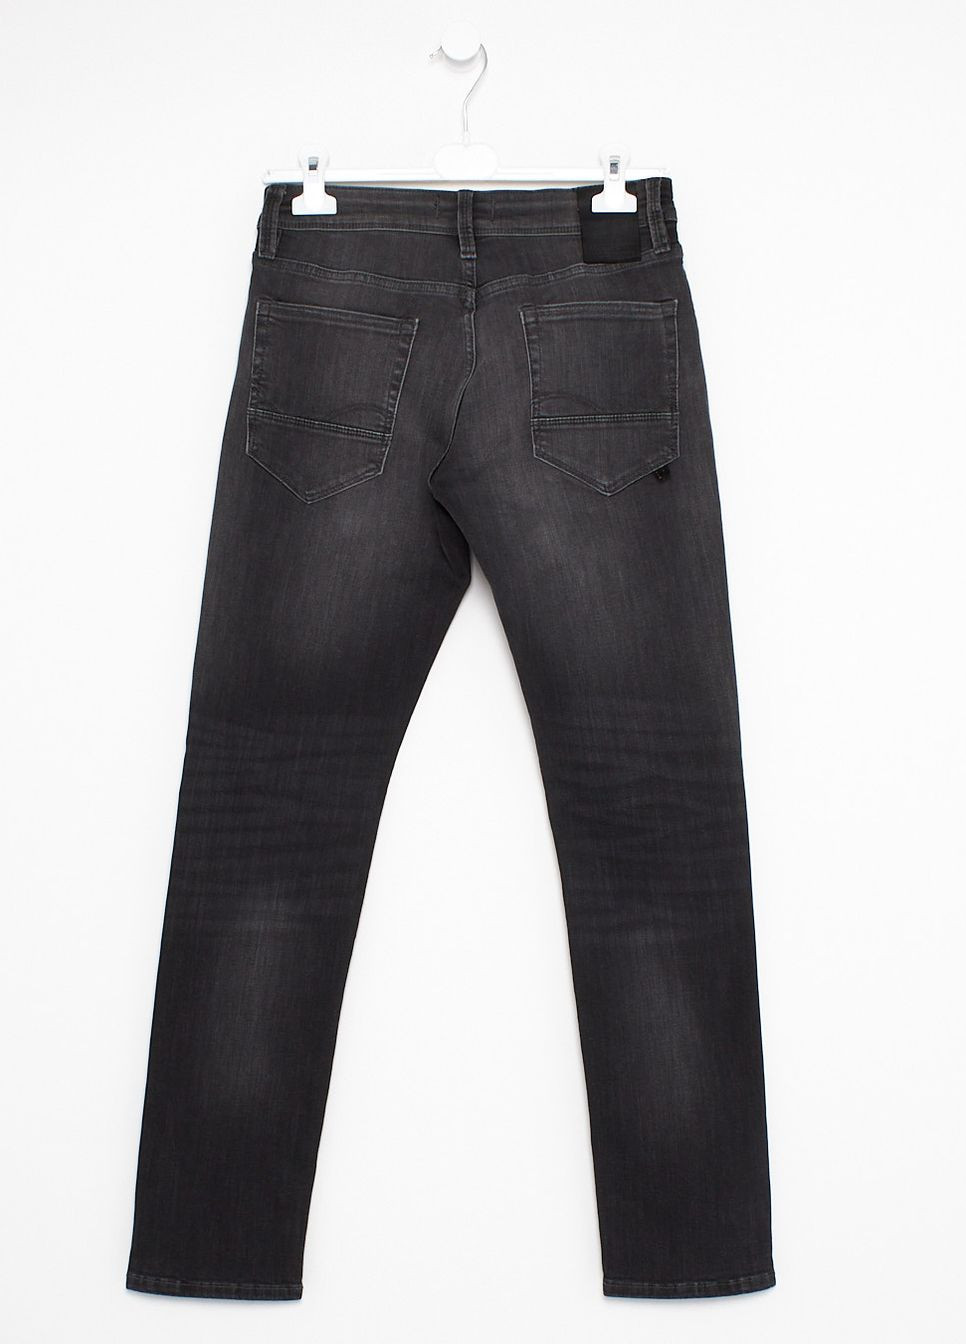 Темно-серые джинсы демисезон,темно-серый,jack&jones Jack & Jones